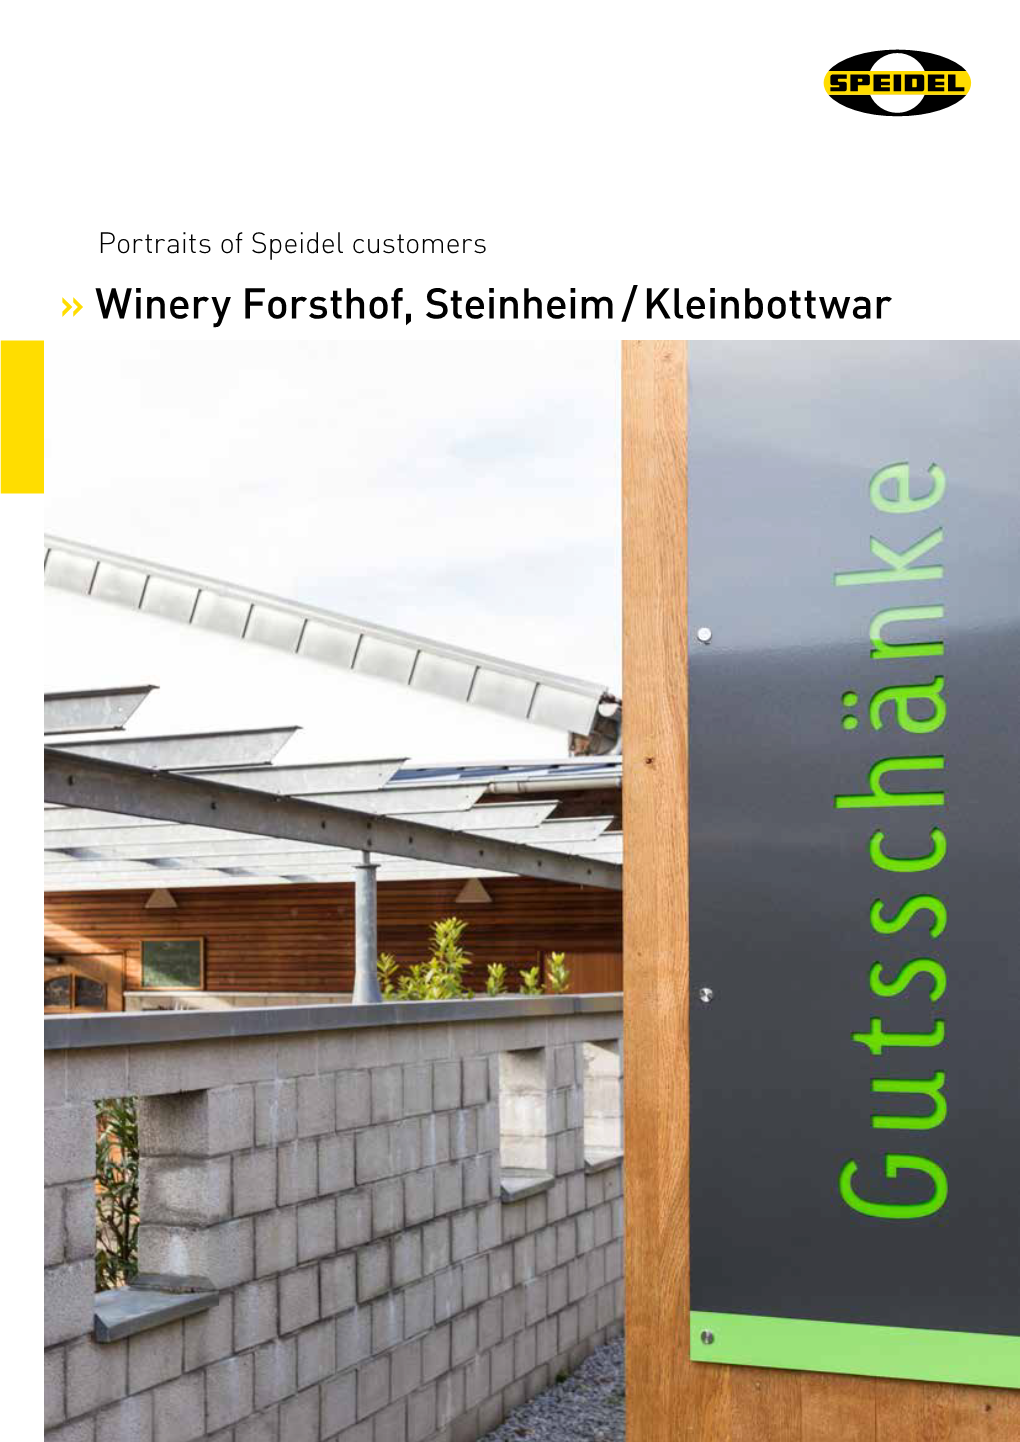 Winery Forsthof, Steinheim / Kleinbottwar PORTRAITS of SPEIDEL CUSTOMERS